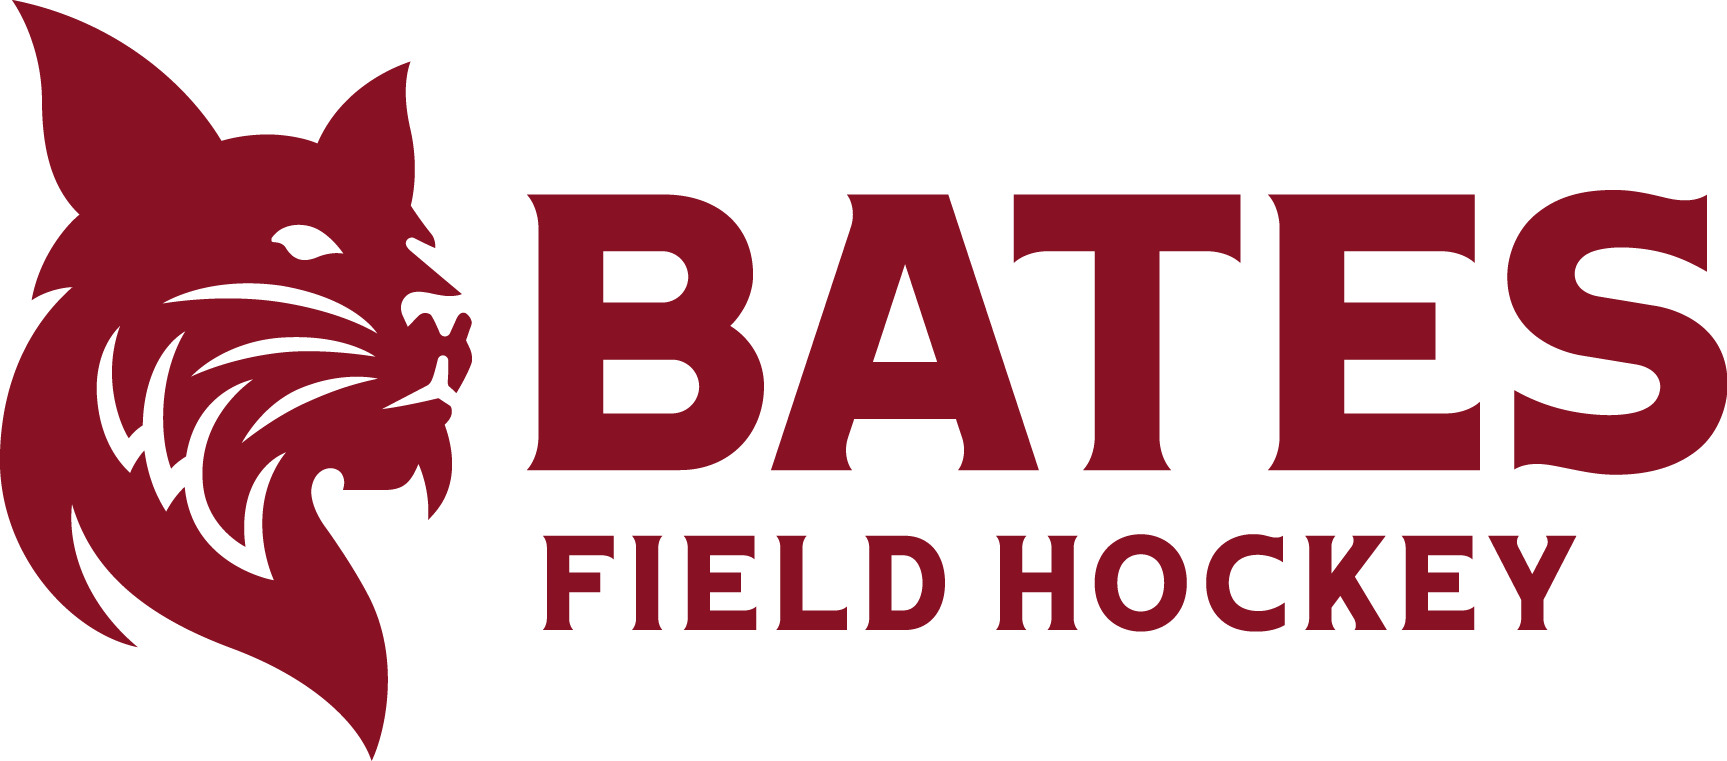 Bates Field Hockey Logo icons